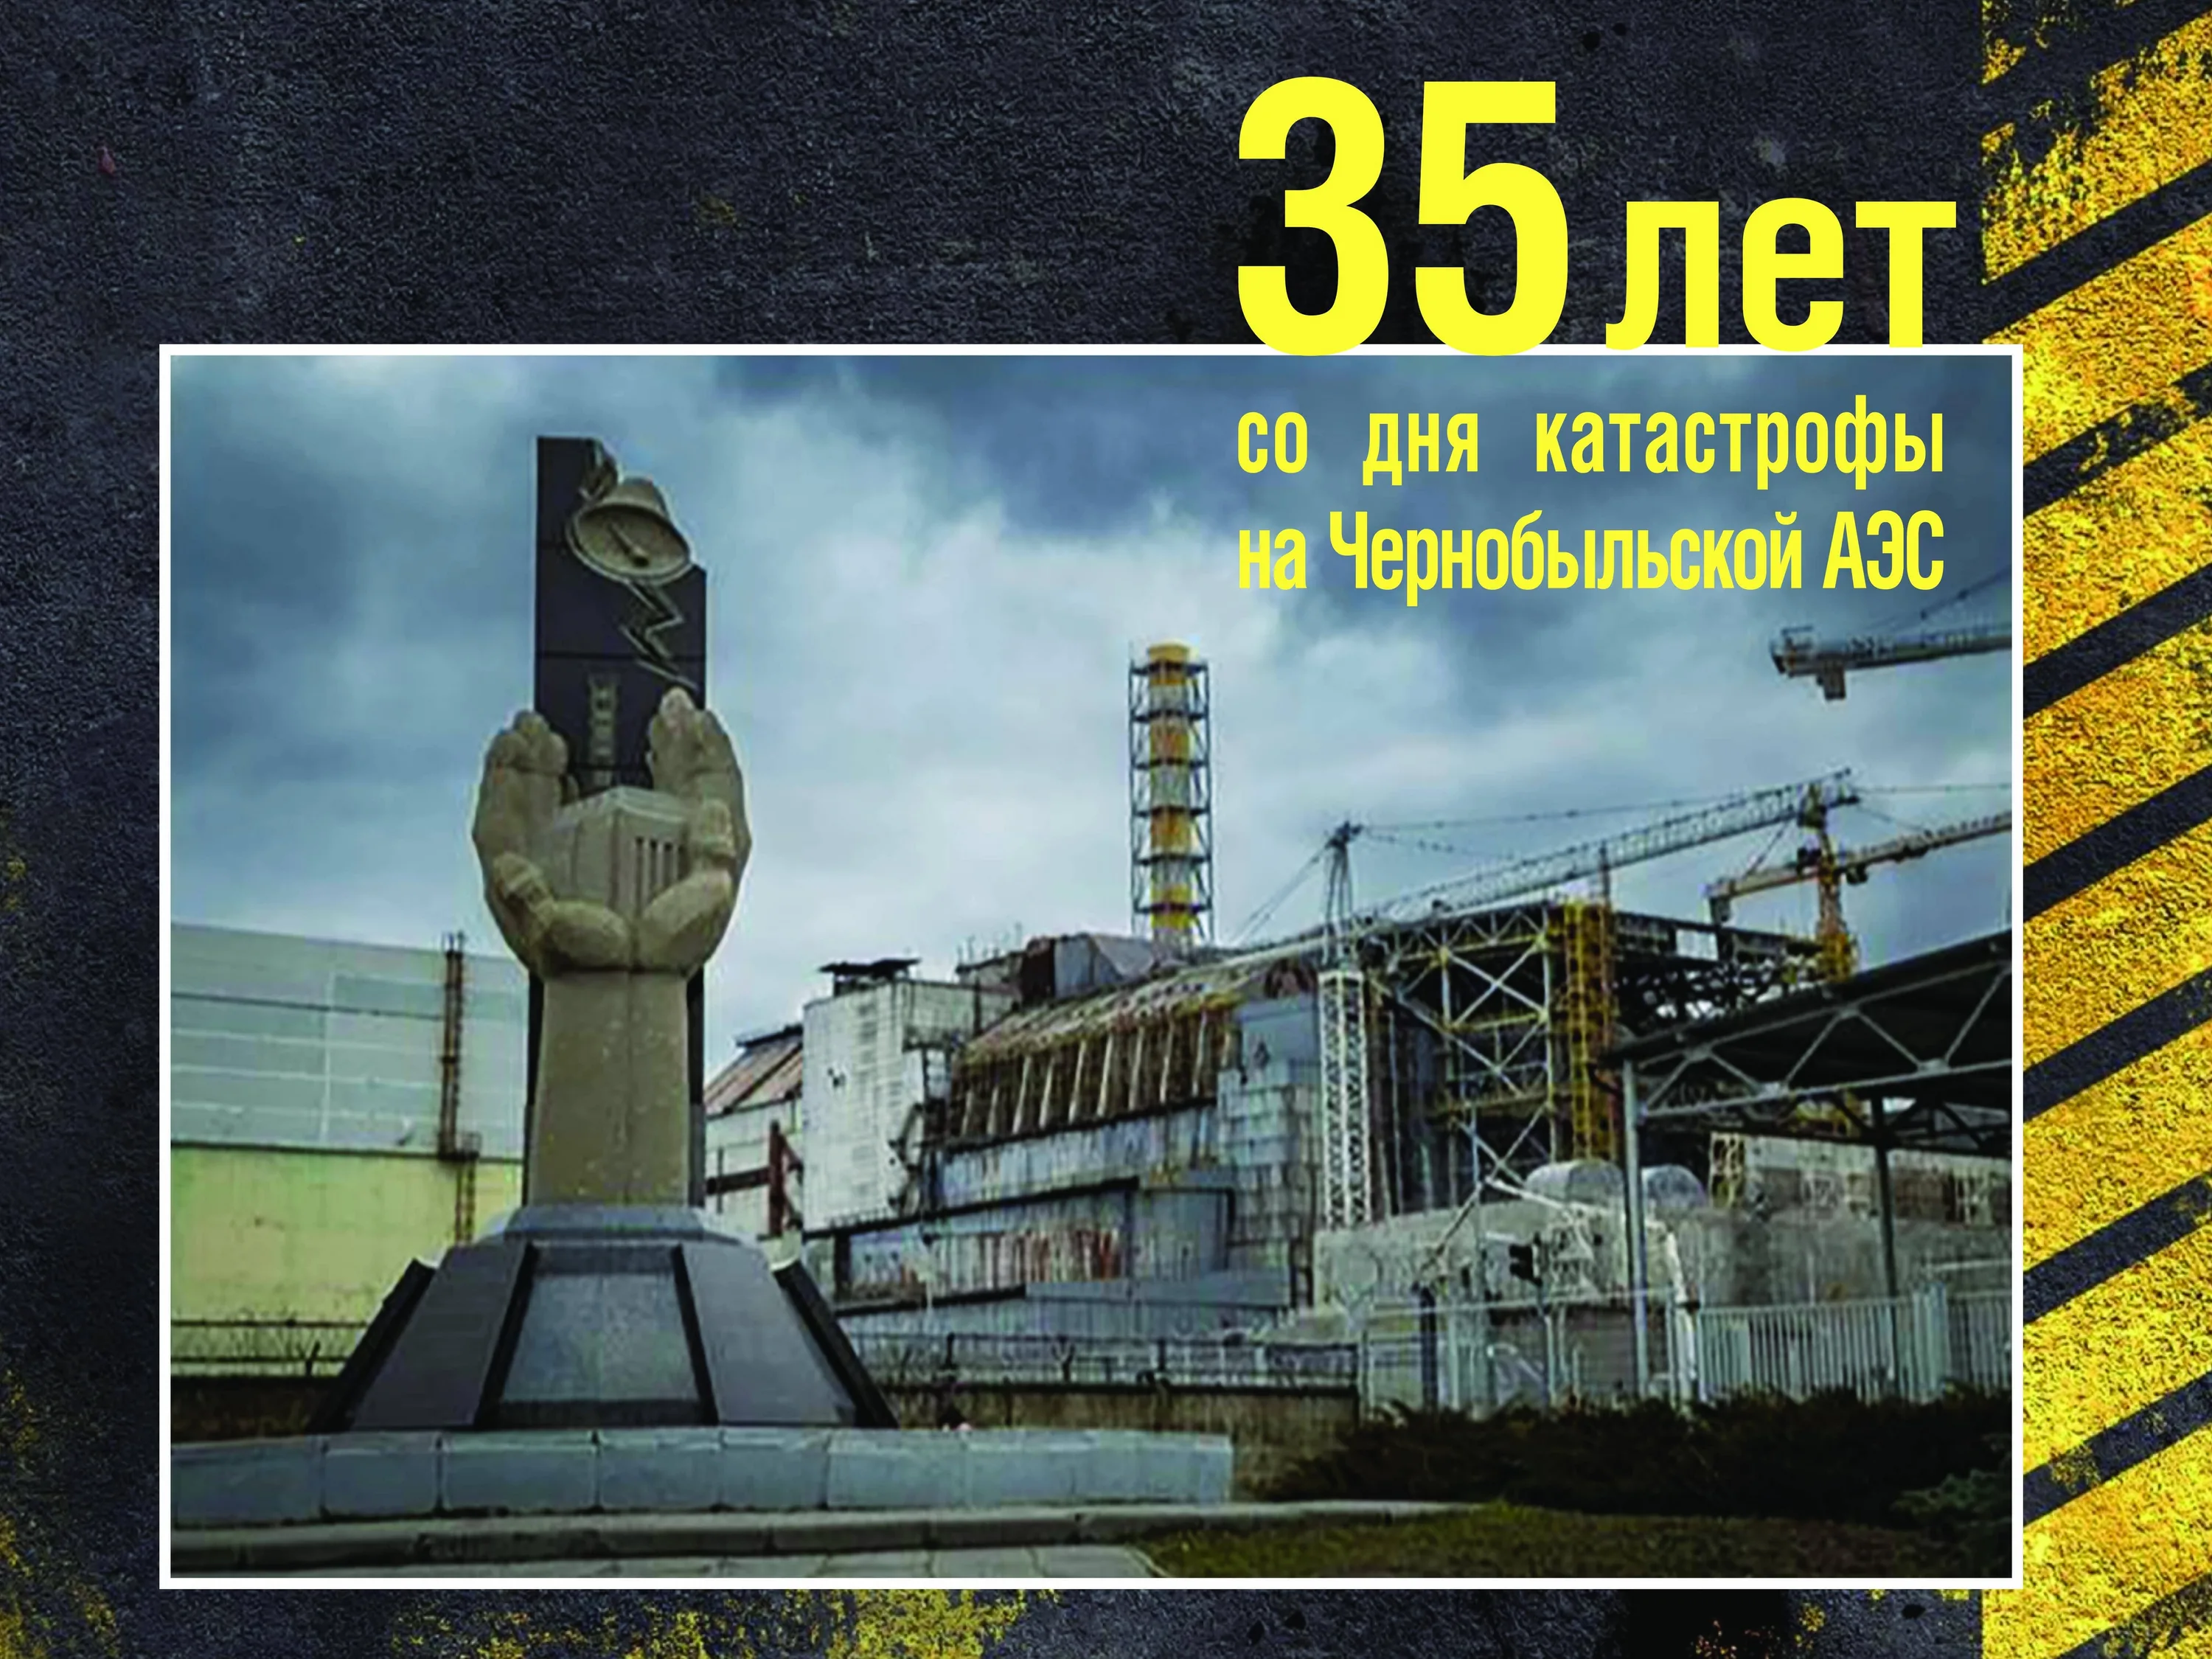 26 апреля чернобыль. 26 Апреля 1986 день памяти Чернобыльской АЭС. 35 Лет Чернобыльской АЭС. ЧАЭС 26.04.1986. 26 Апреля ЧАЭС память.